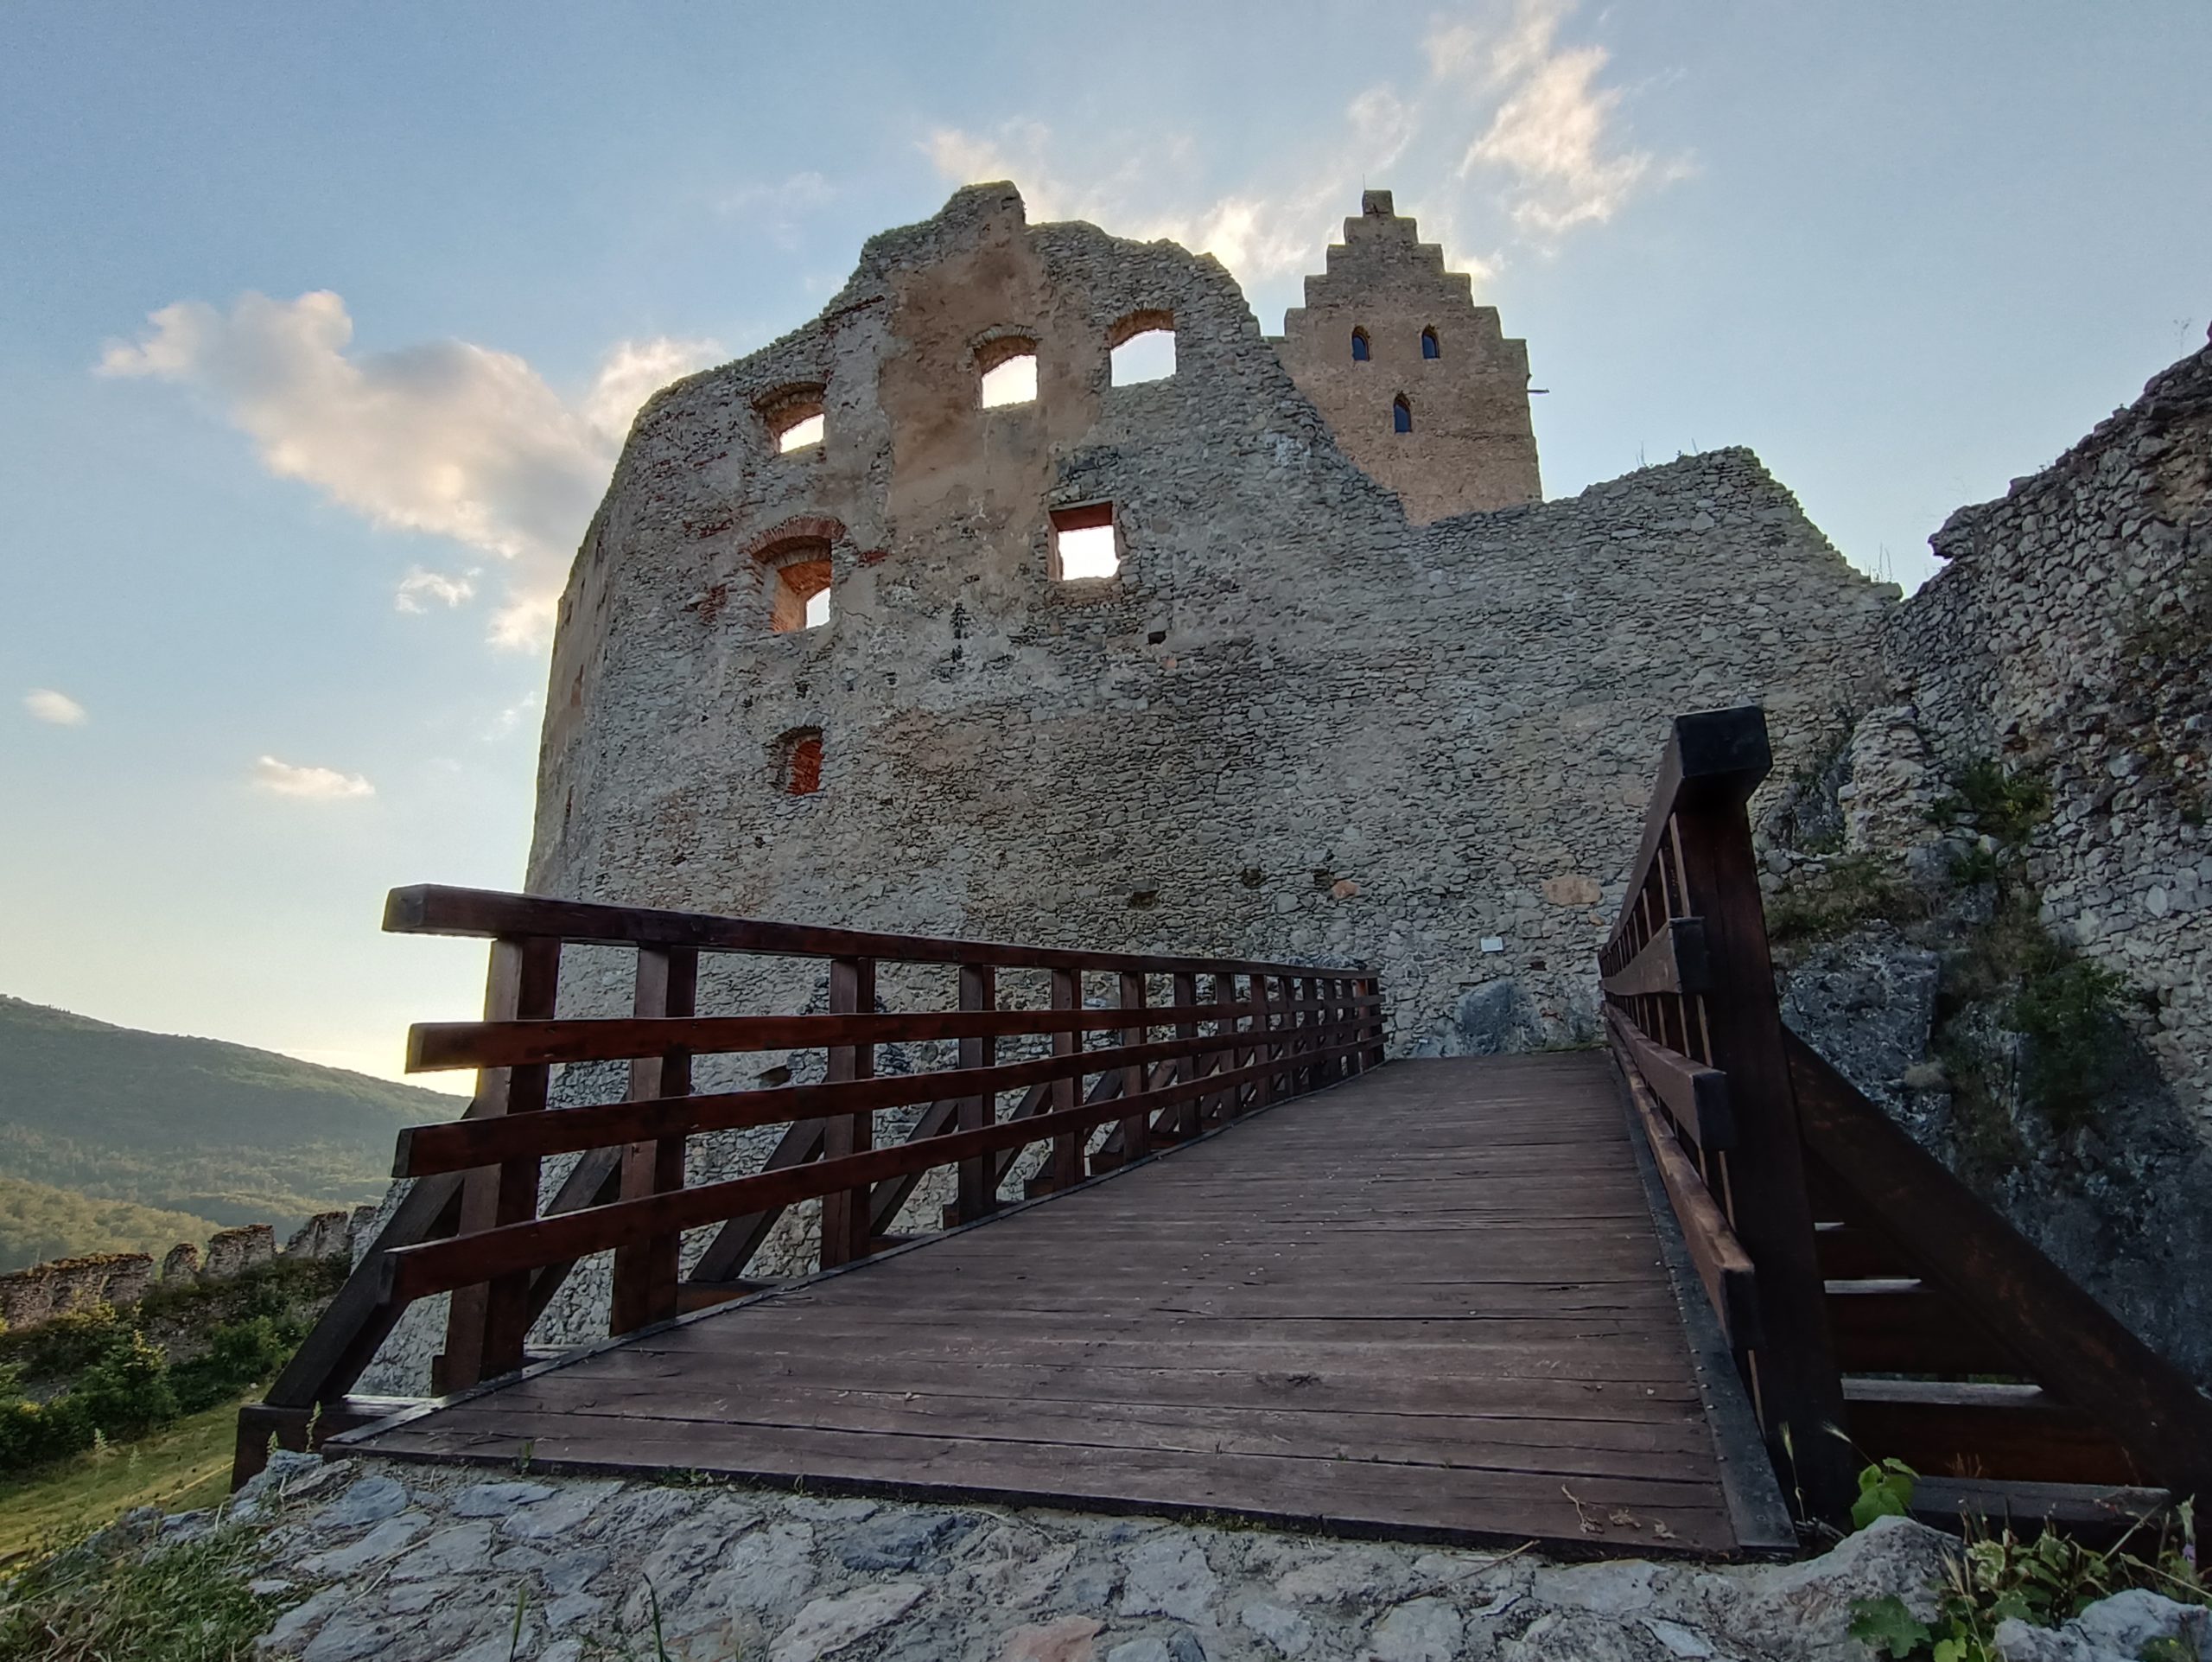 Drevený most, ktorý vedie k zrúcanine hradu